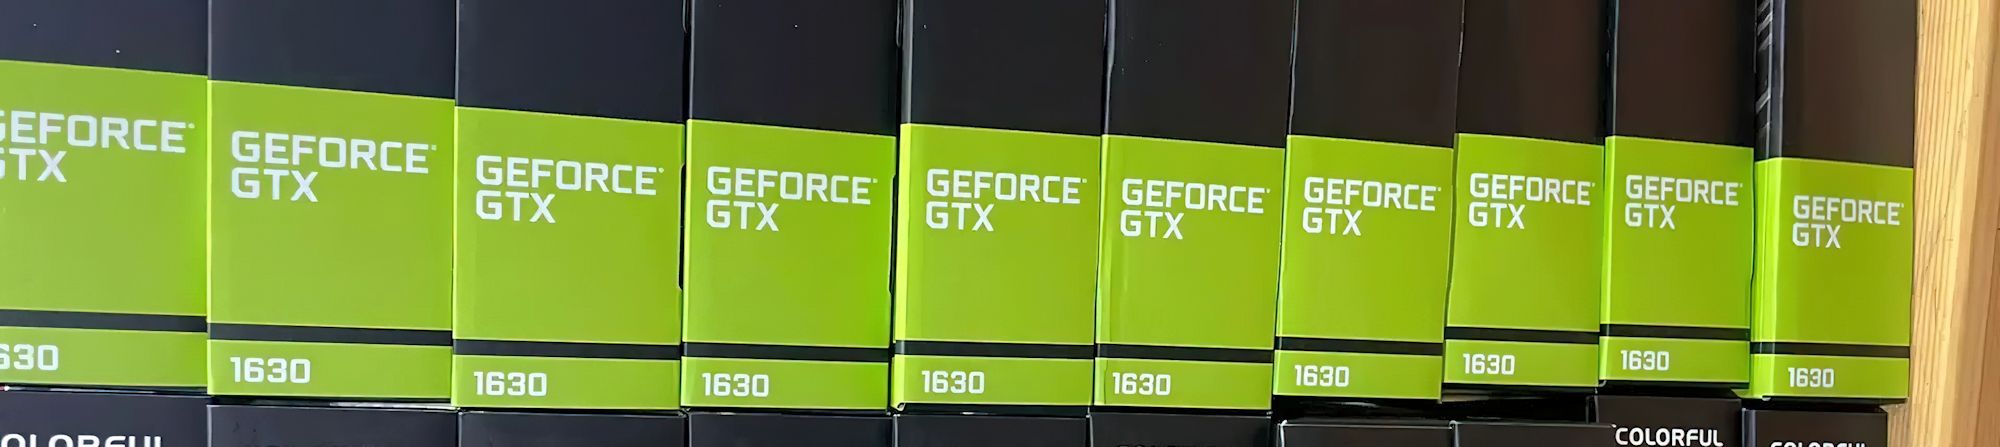 کارت گرافیک های GeForce GTX 1630